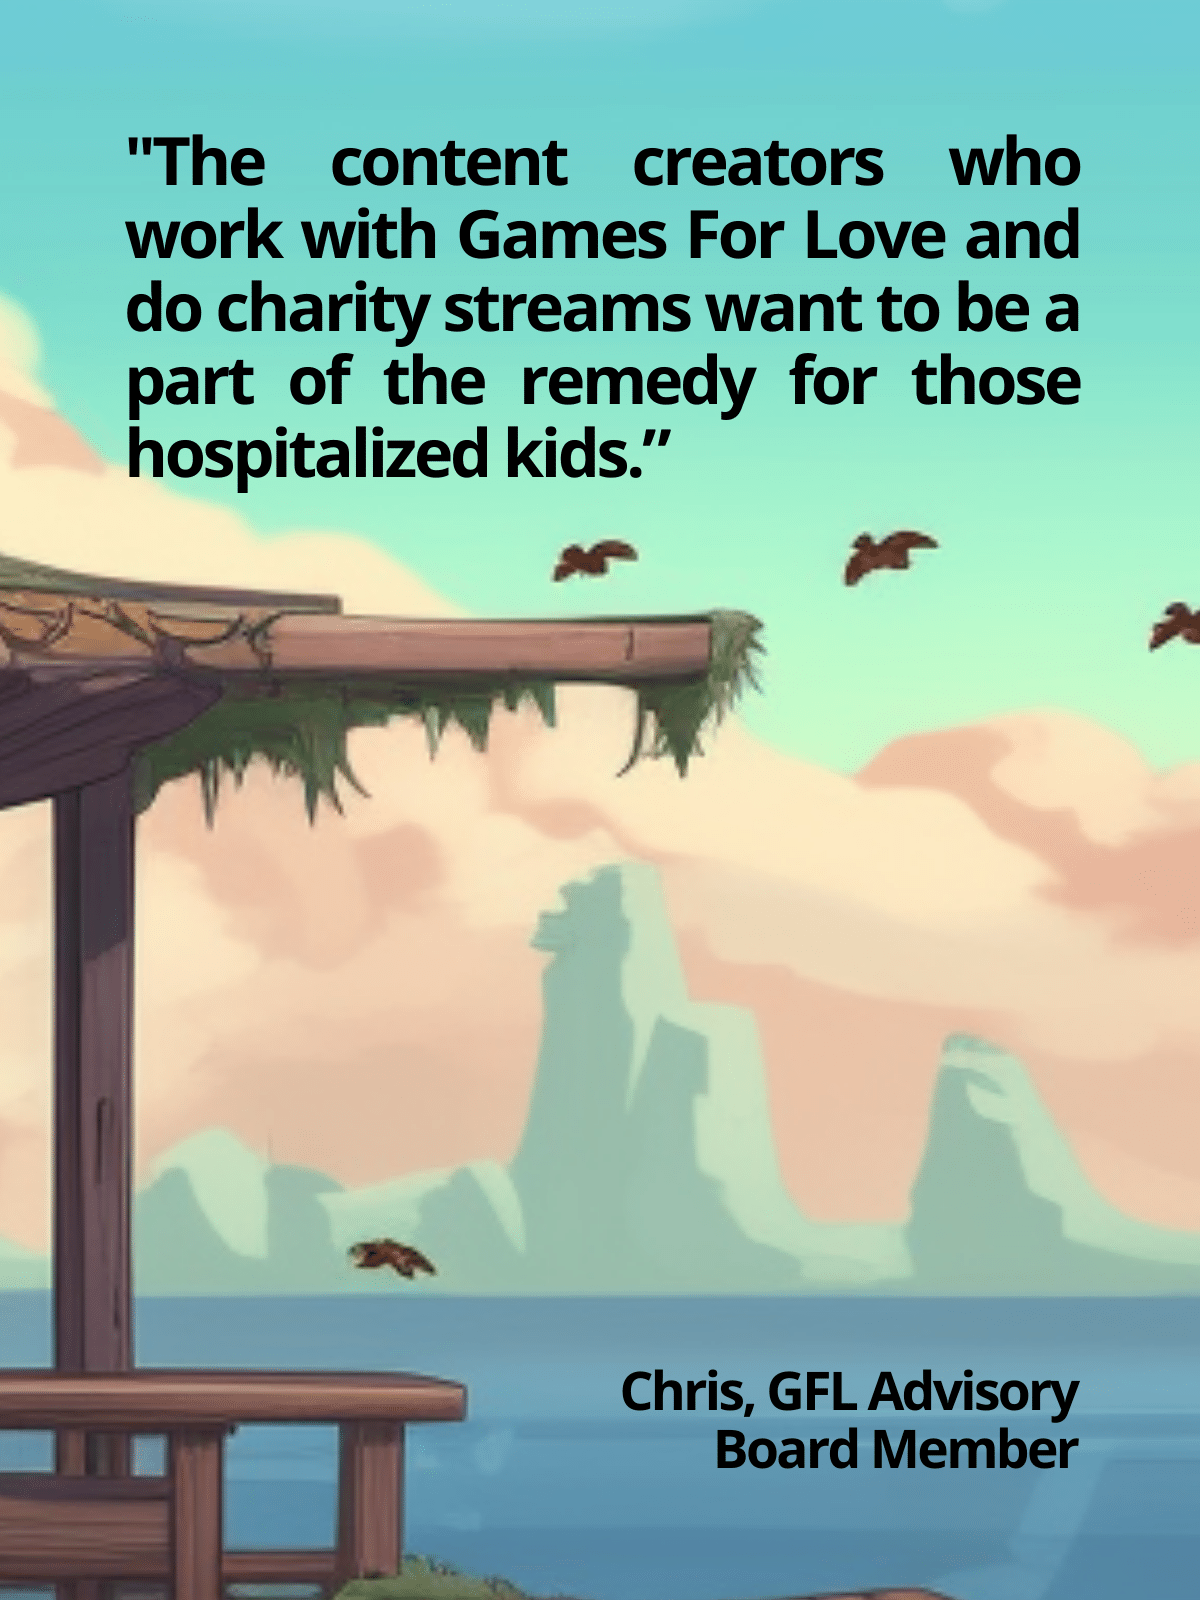 Games For Love Advisory Board Spotlight - Chris Castagnetto